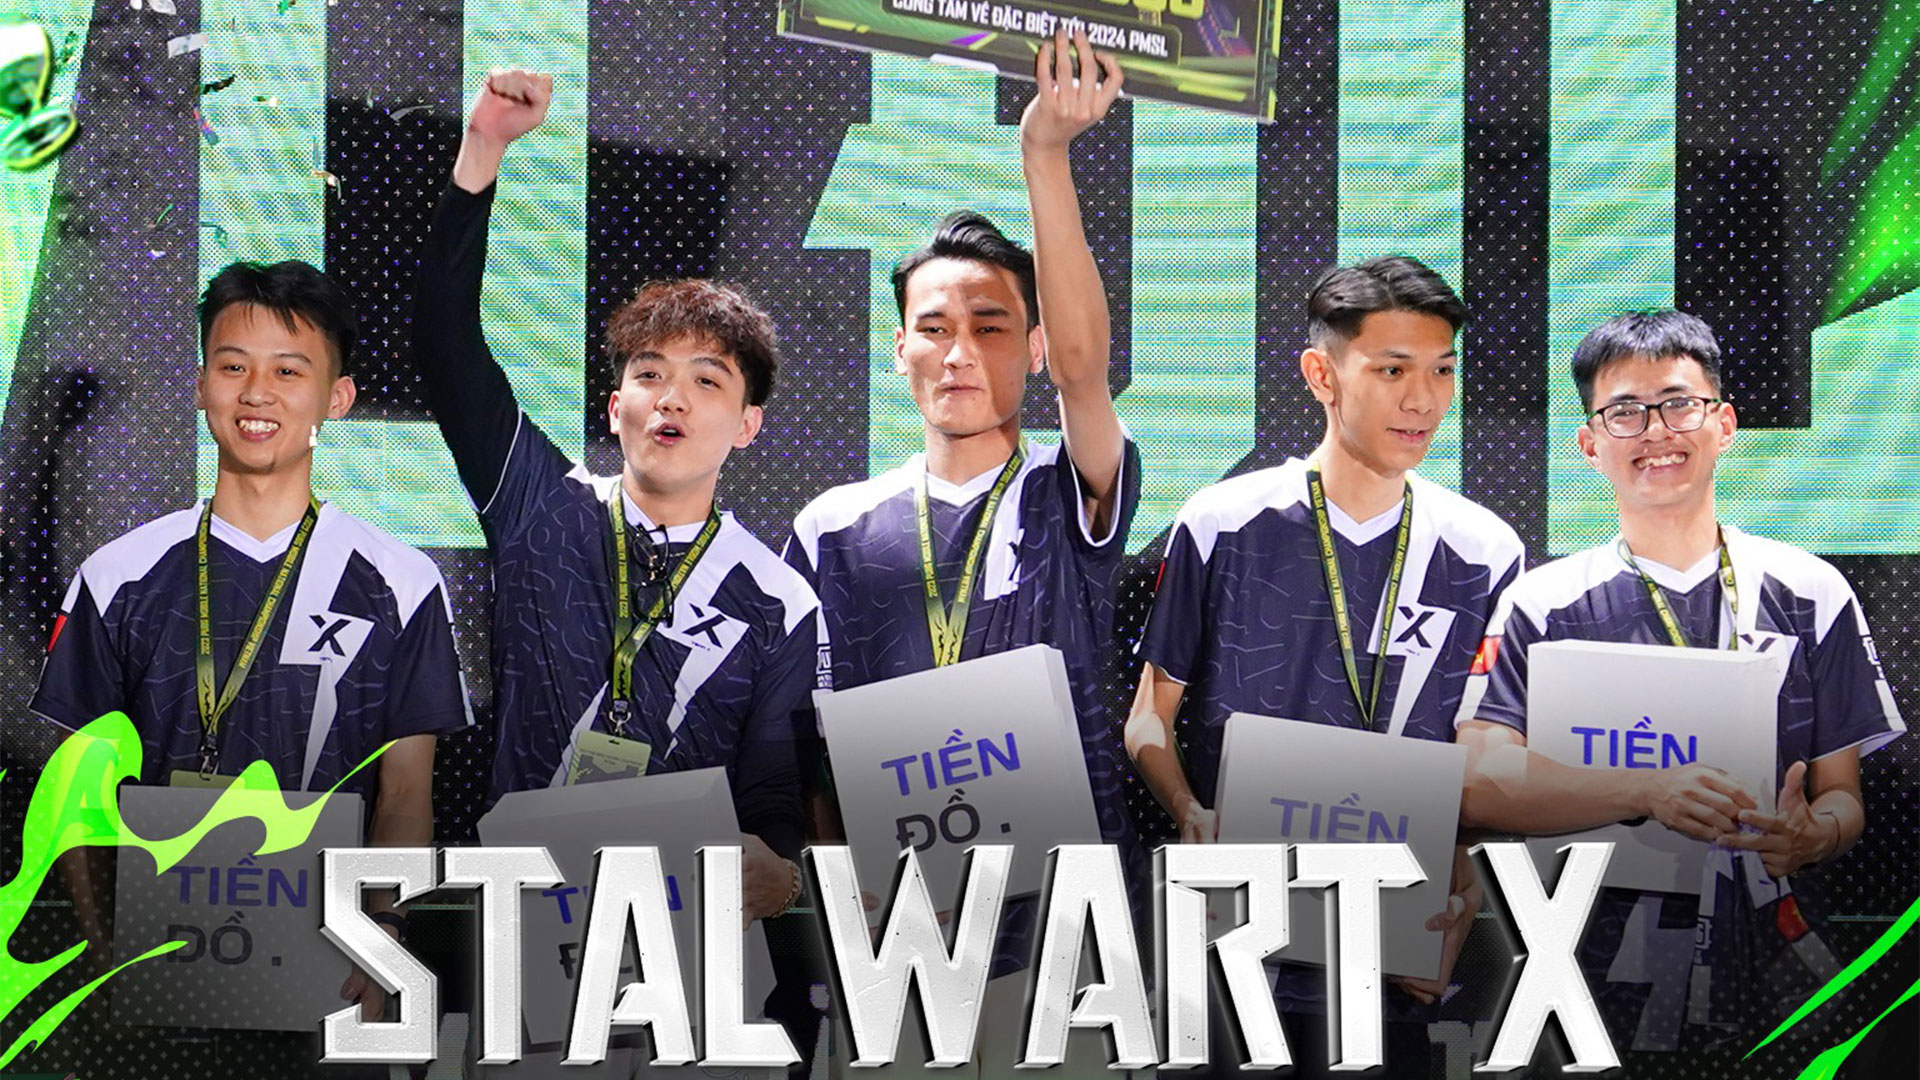 StalWart X lên ngôi vô địch giải đấu game PUBG Mobile danh giá nhất Việt Nam- Ảnh 1.